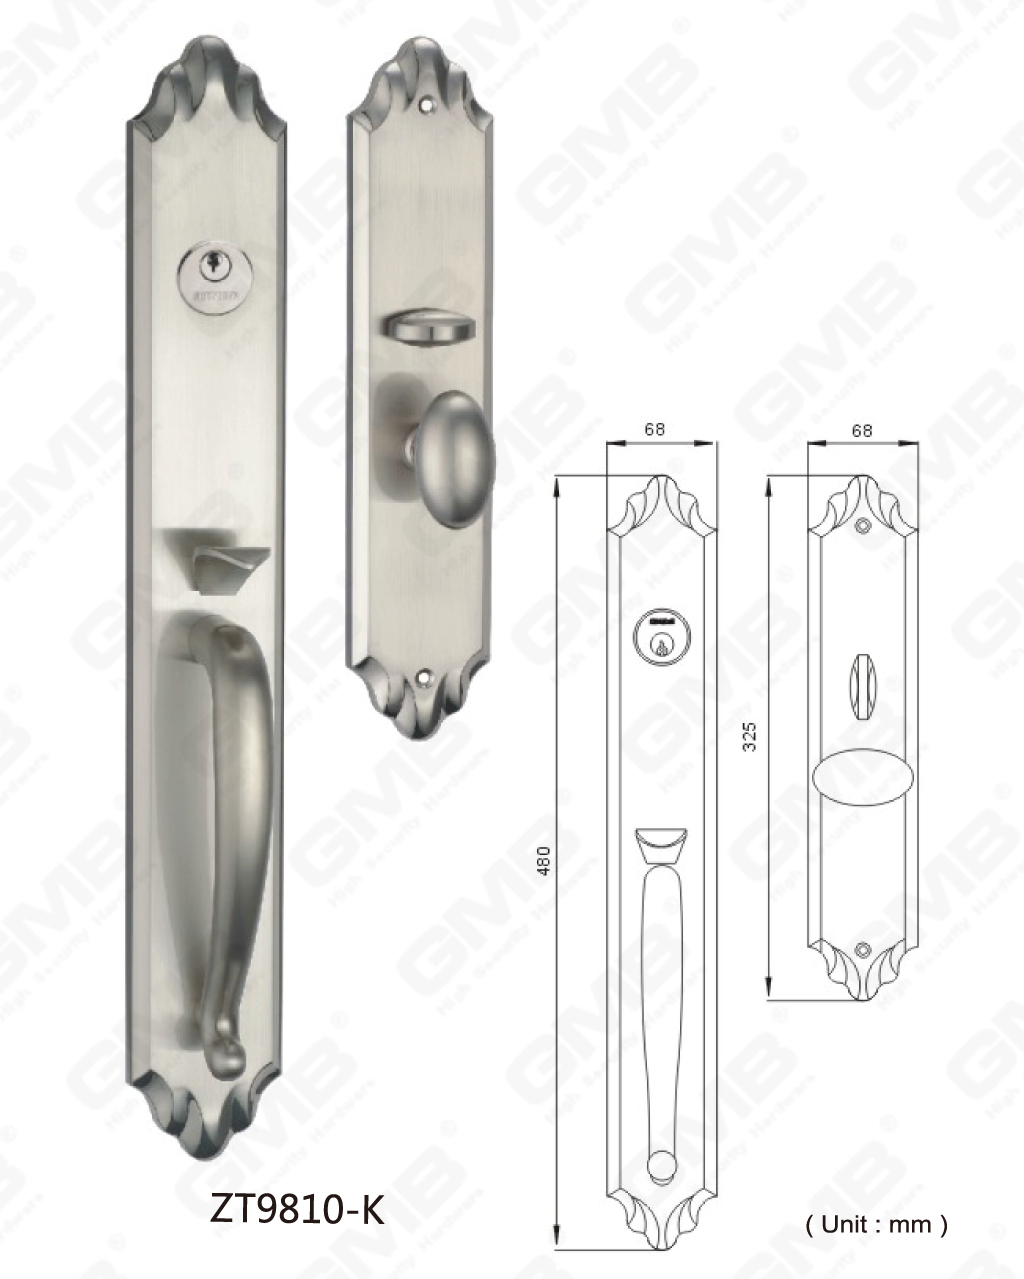 סגסוגת אבץ עם אבטחה גבוהה מחוץ לדלת וילה חומר הגלם הוא ממותג לפיד (ZT9810-K)